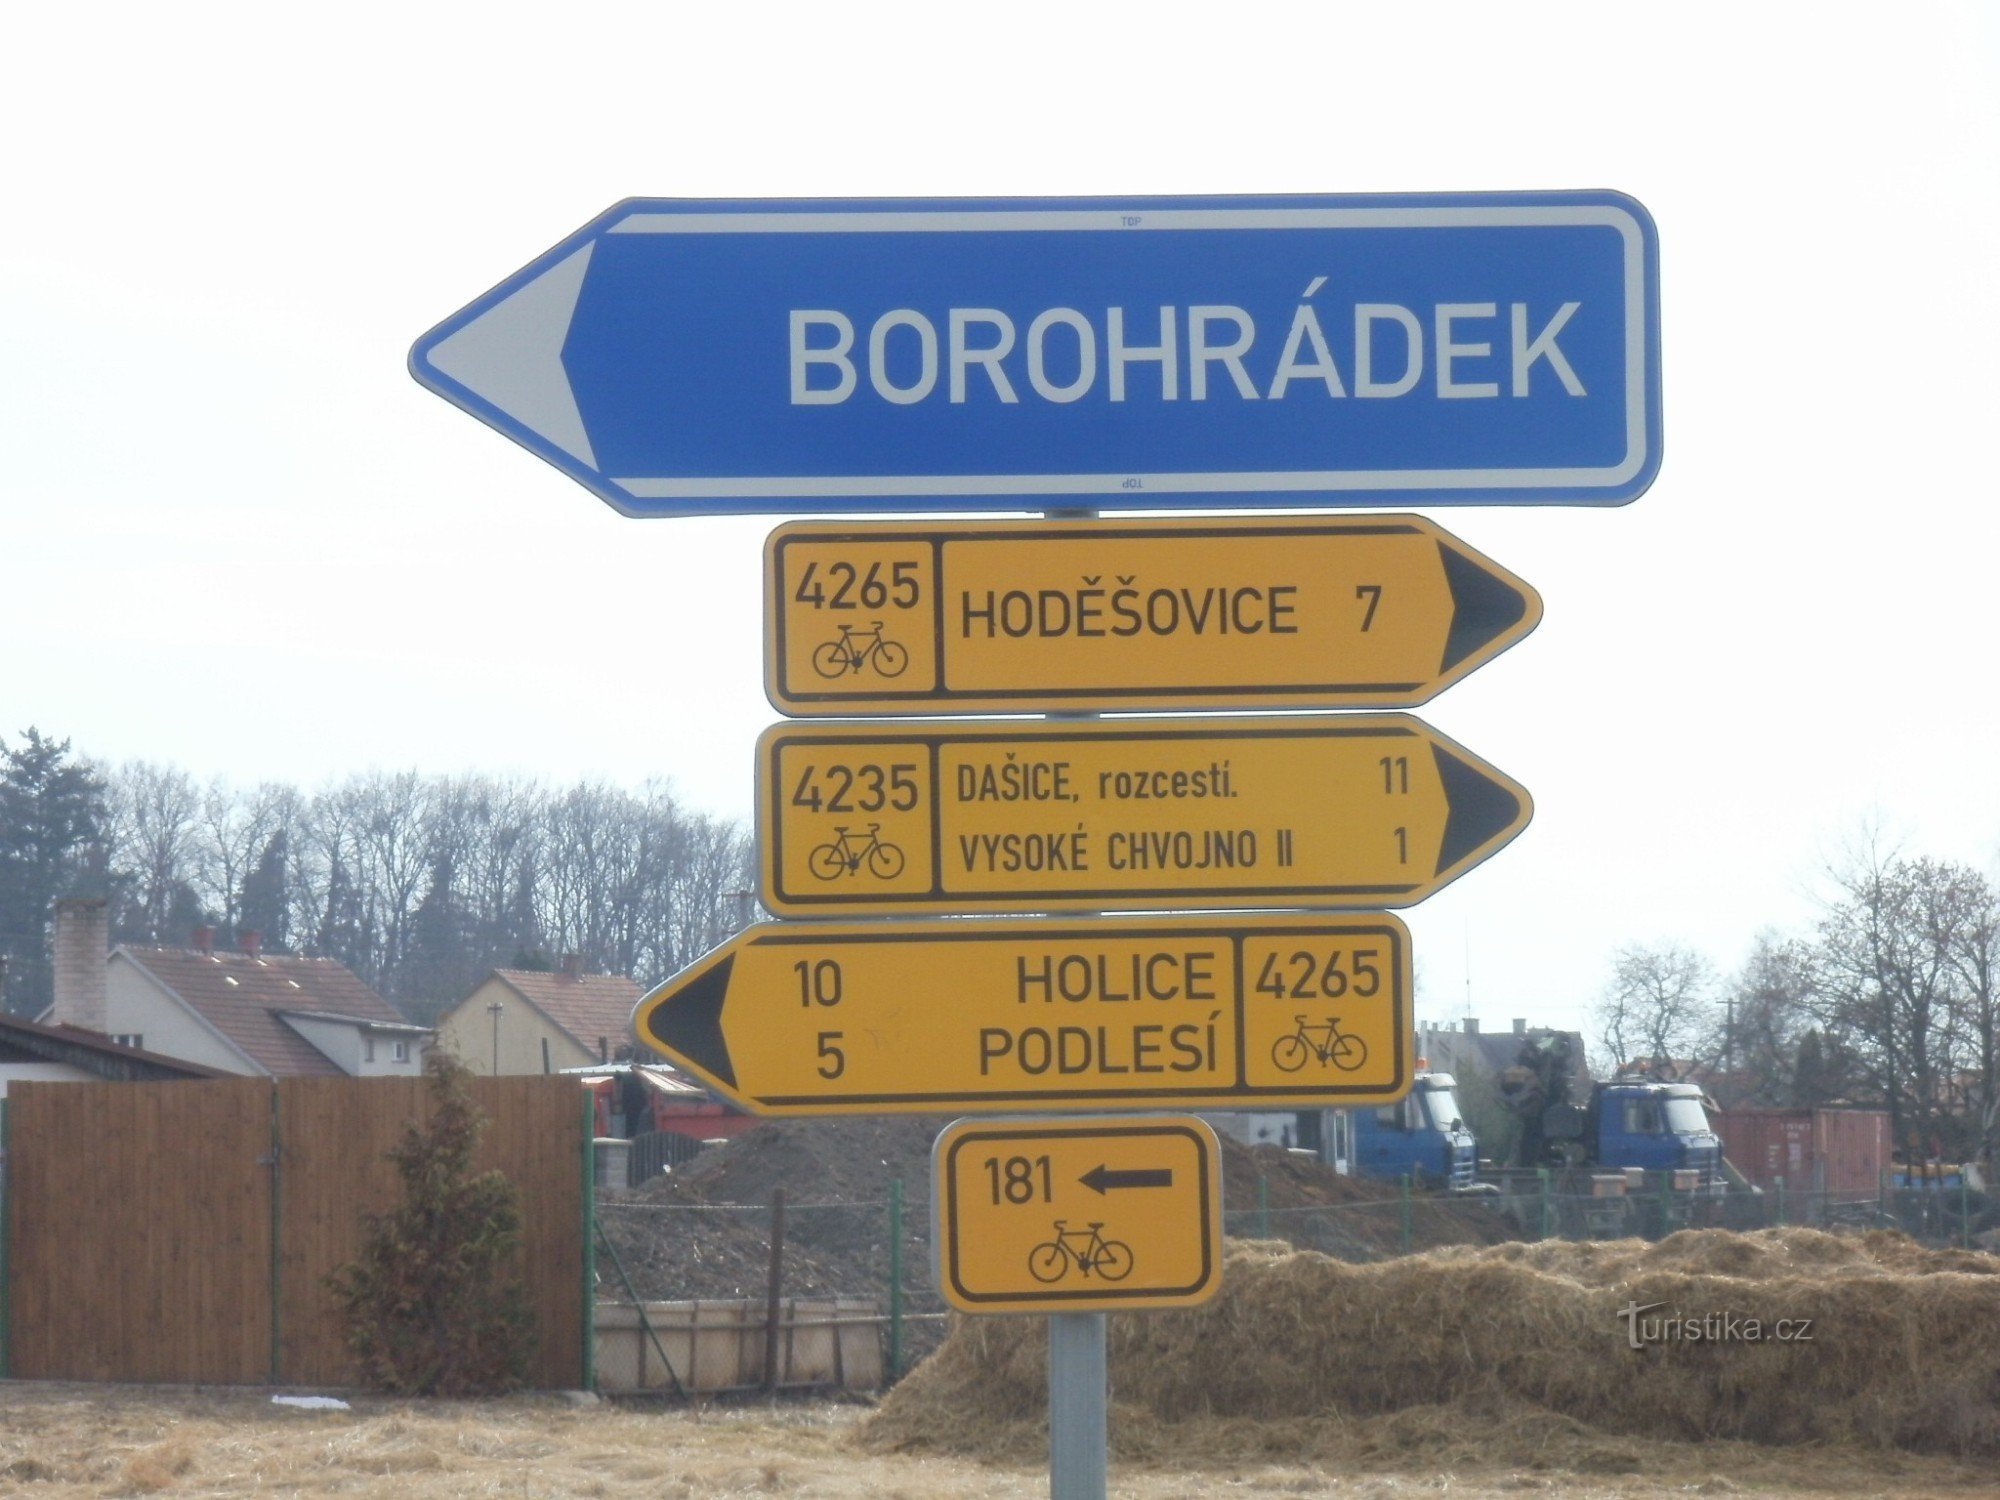 cycling junction near Vysoké Chvojno